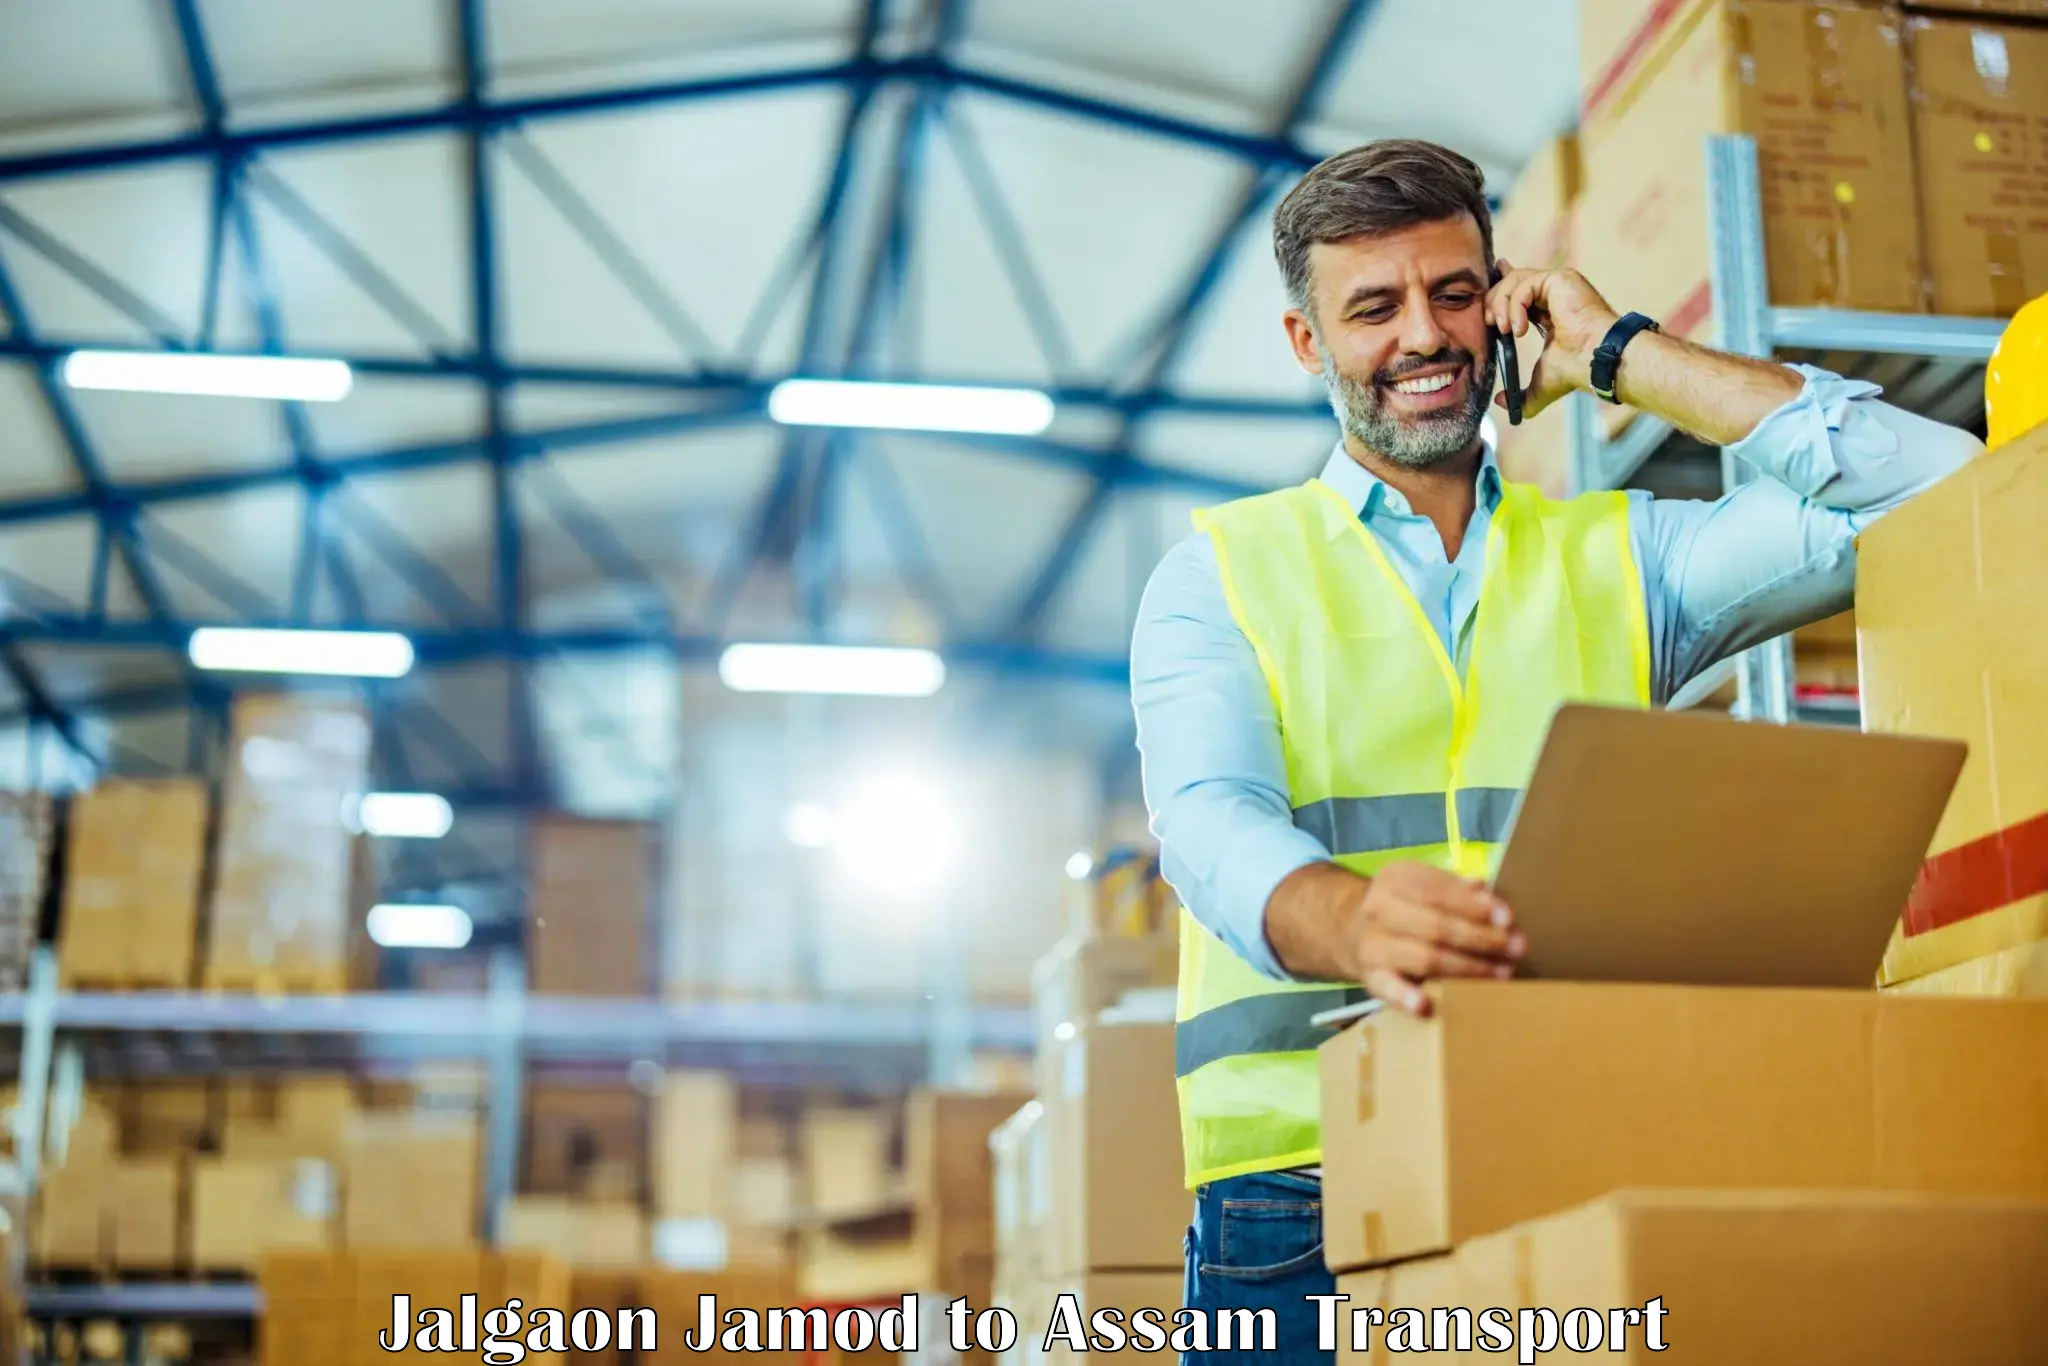 Shipping services Jalgaon Jamod to Nagaon